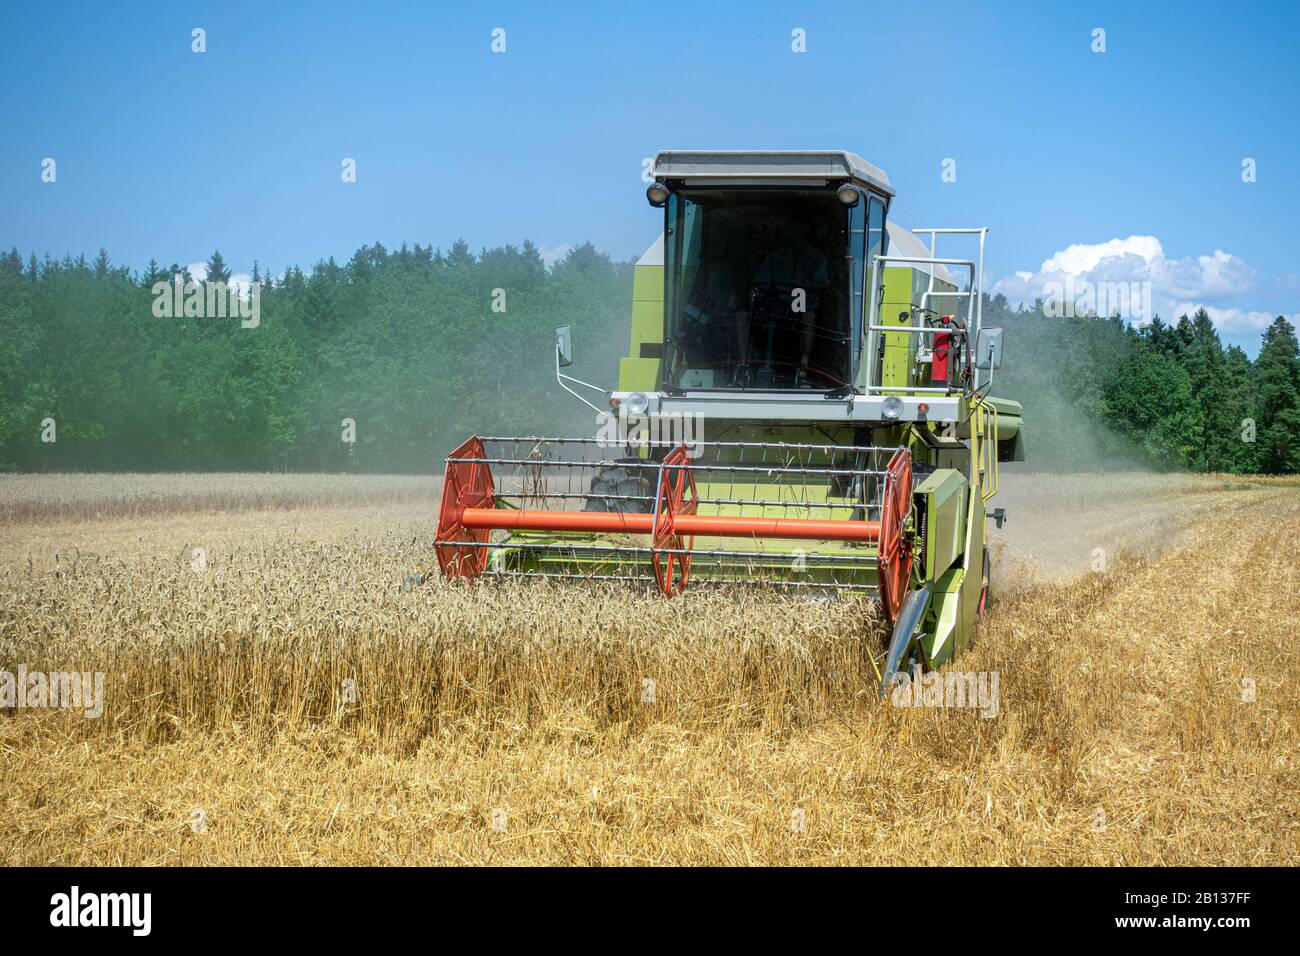 La moissonneuse-batteuse récolte un champ de blé mûr Banque D'Images